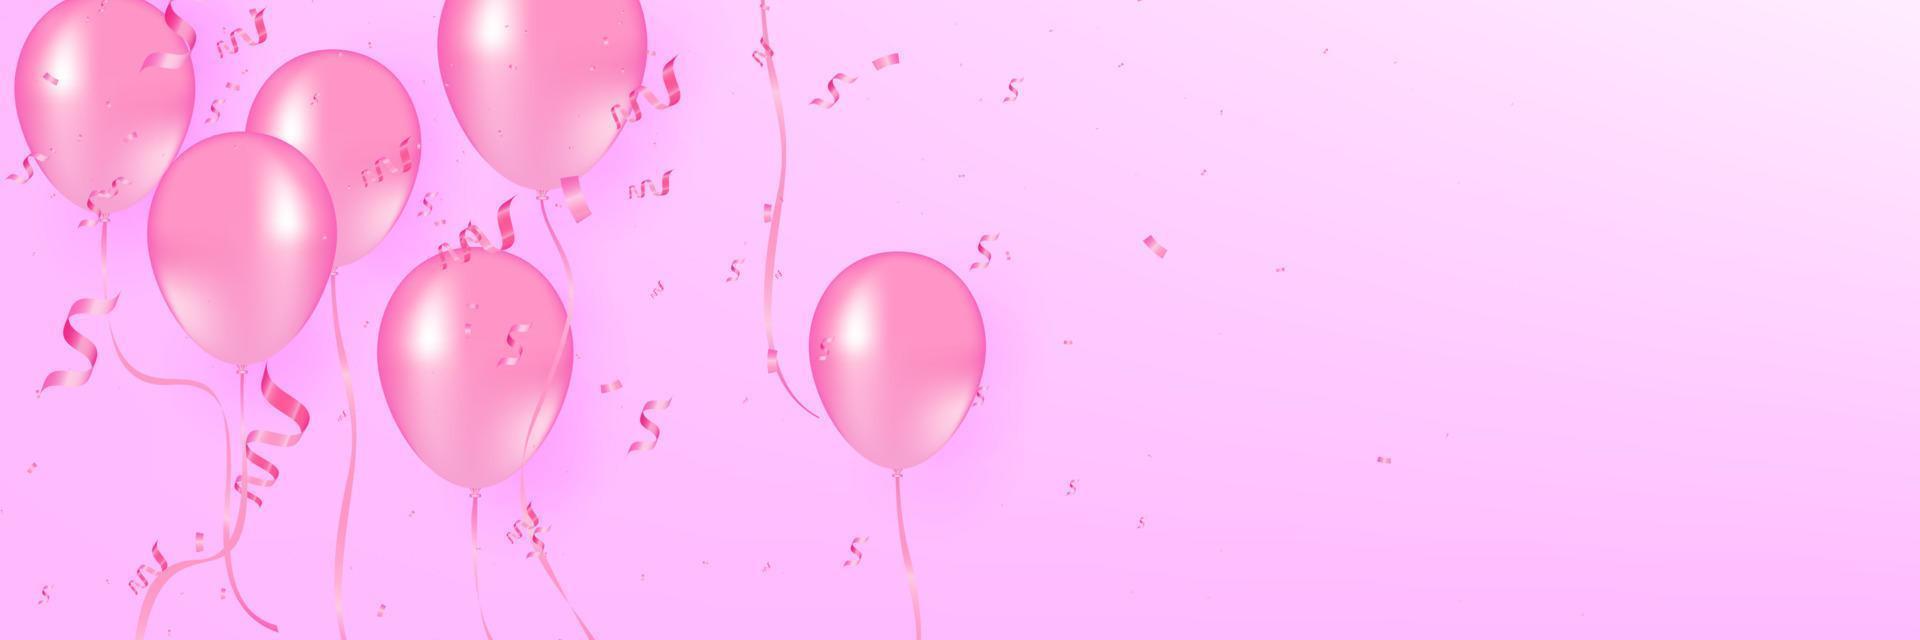 globos rojos suaves con confeti ilustración vectorial realista. Fondo de vector de globos rosa. los globos rosas y el confeti se pueden usar para fiestas, celebraciones y días festivos.